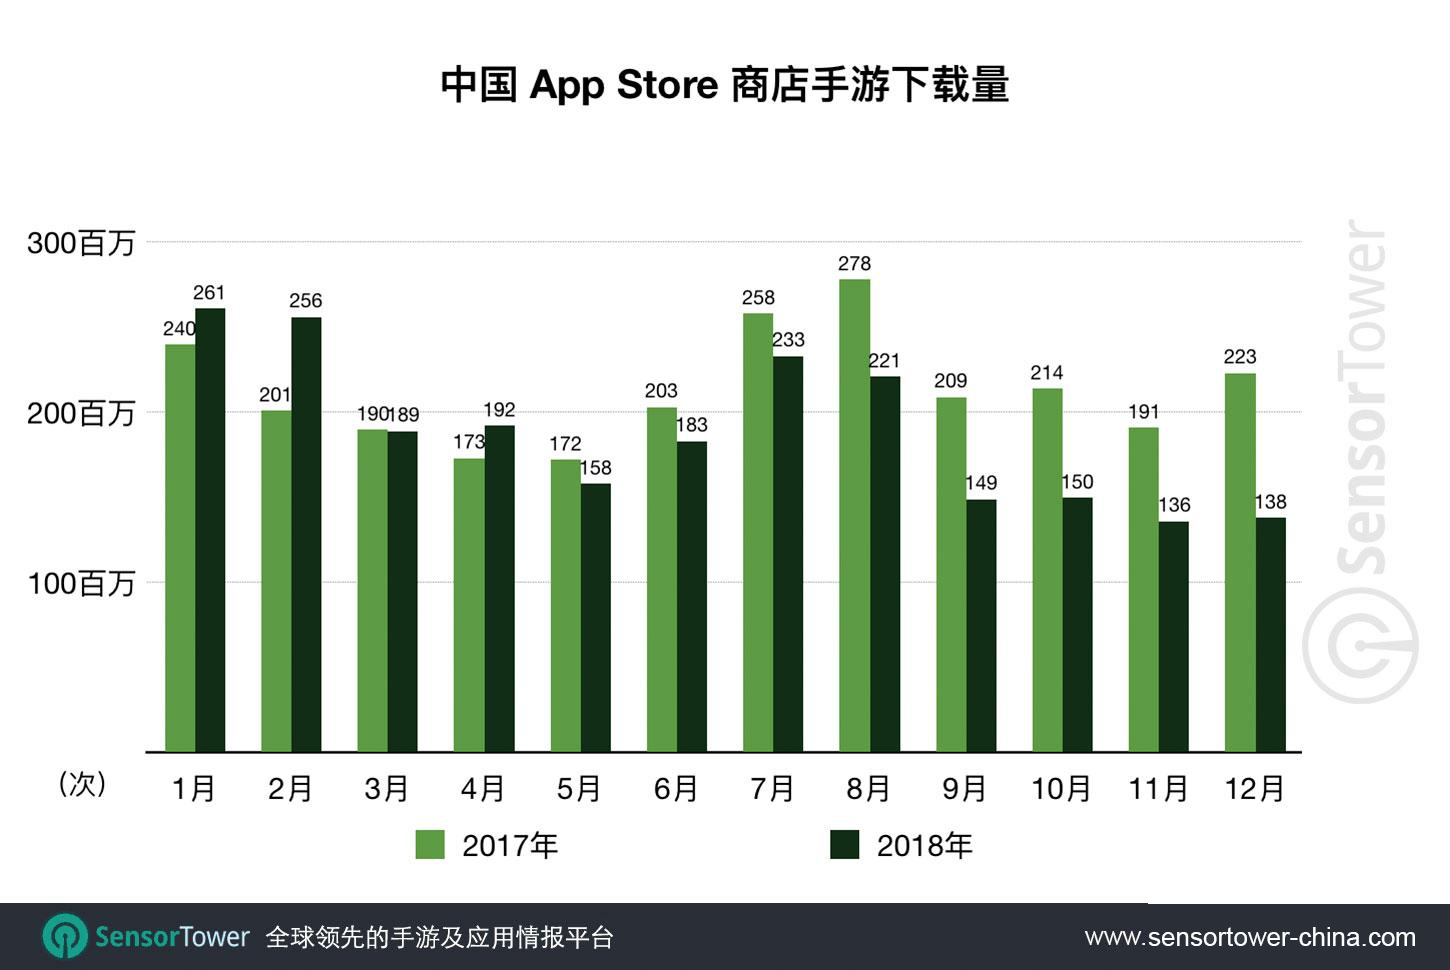 2018年中国App Store新上线手游13077款 同比减少59%